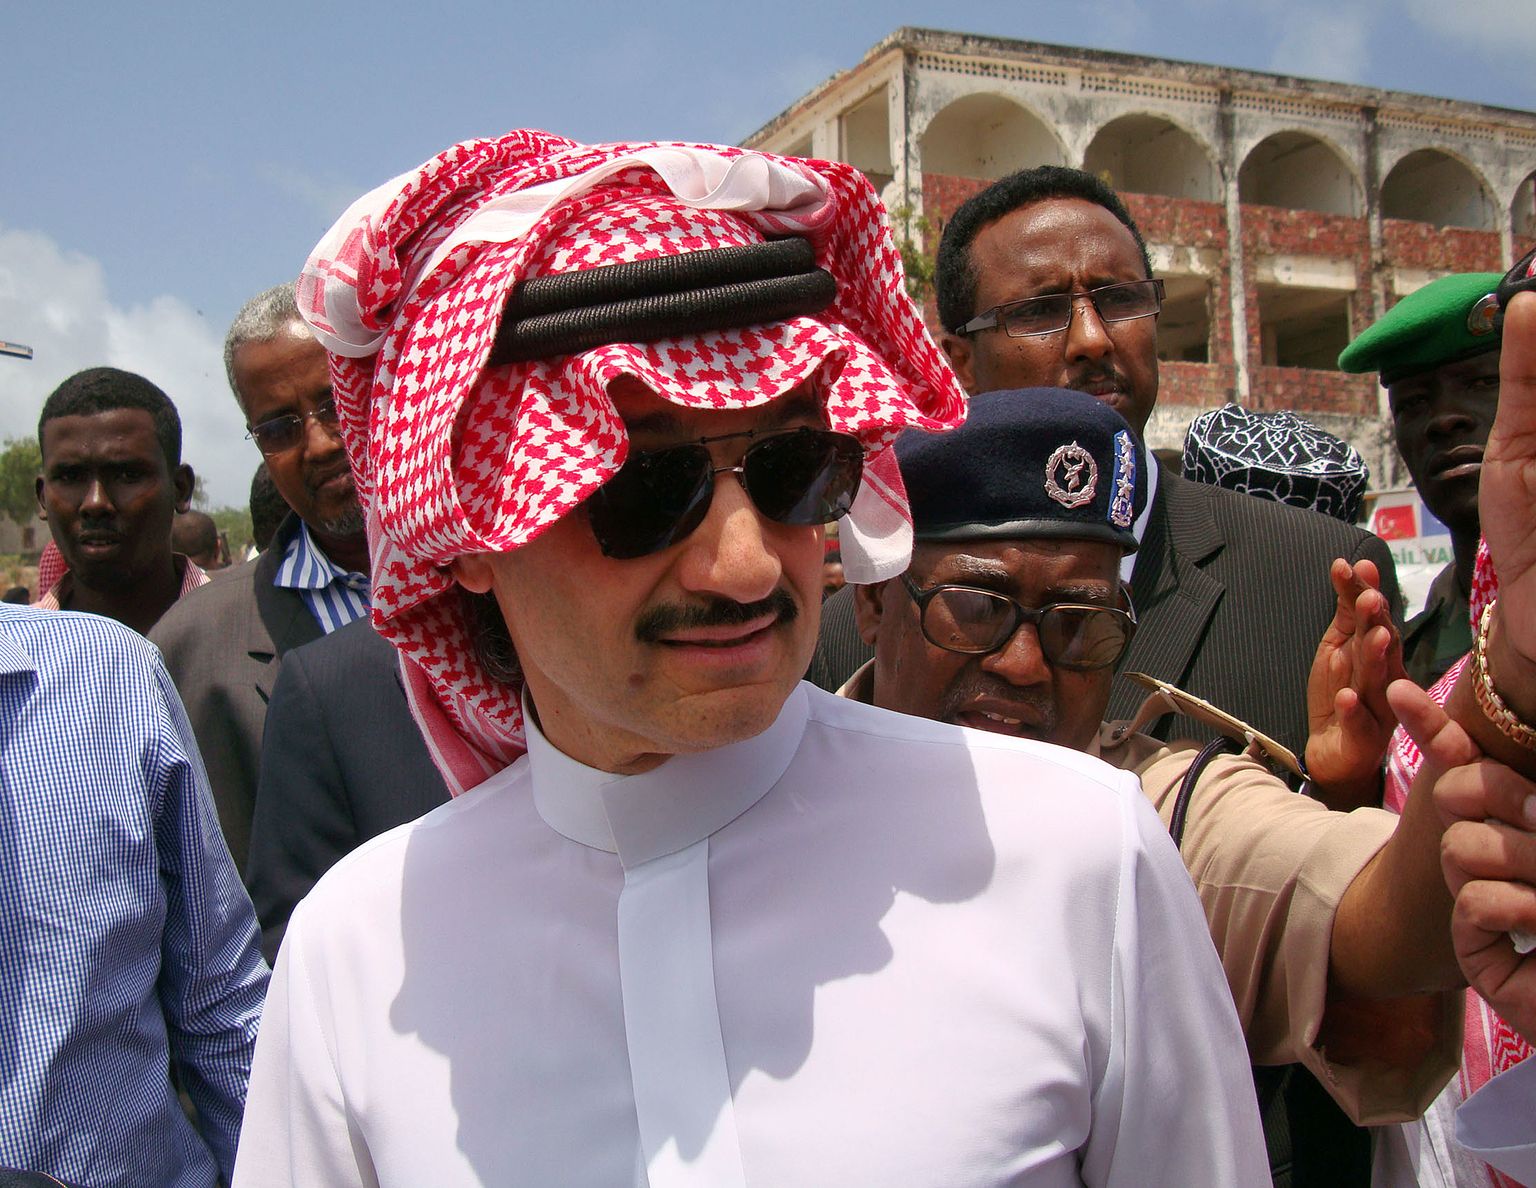 Saudi Araabia prints Al-Waleed bin Talal.